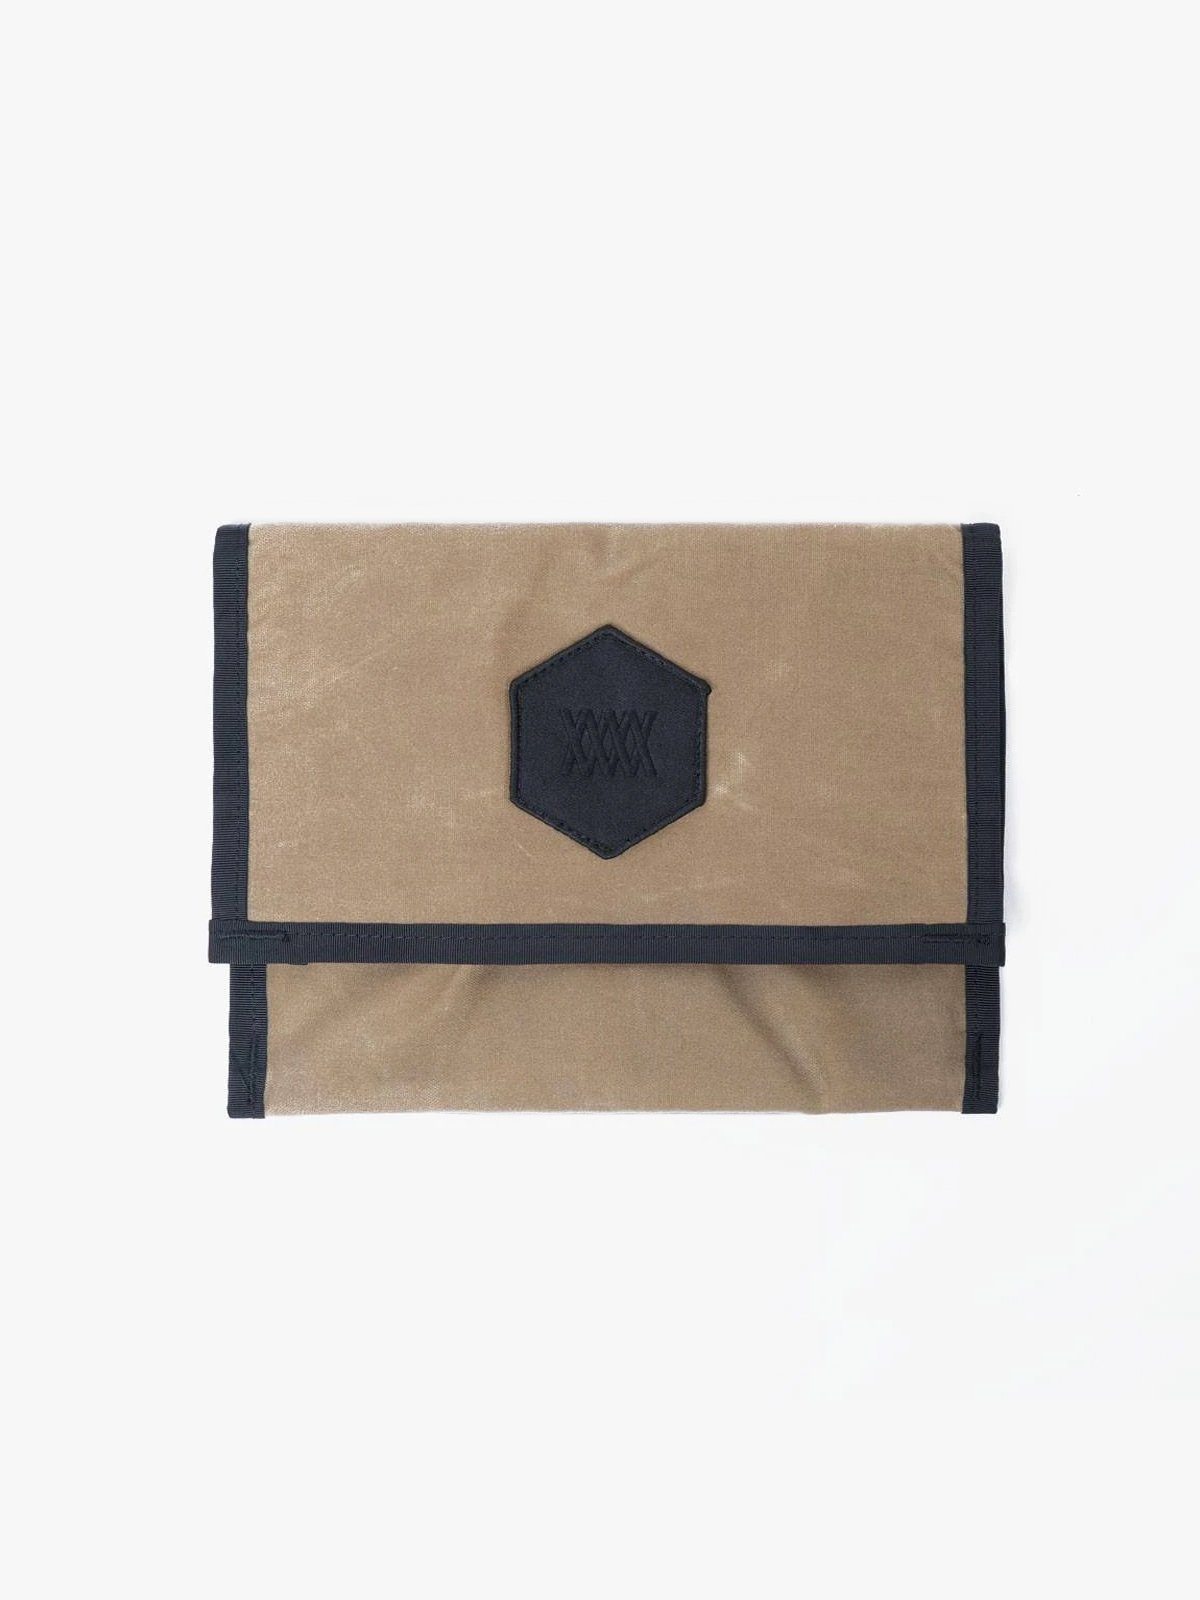 Arkiv Mini Folio by Mission Workshop - Bolsas impermeables y ropa técnica - San Francisco y Los Angeles - Construidas para durar - Garantizadas para siempre